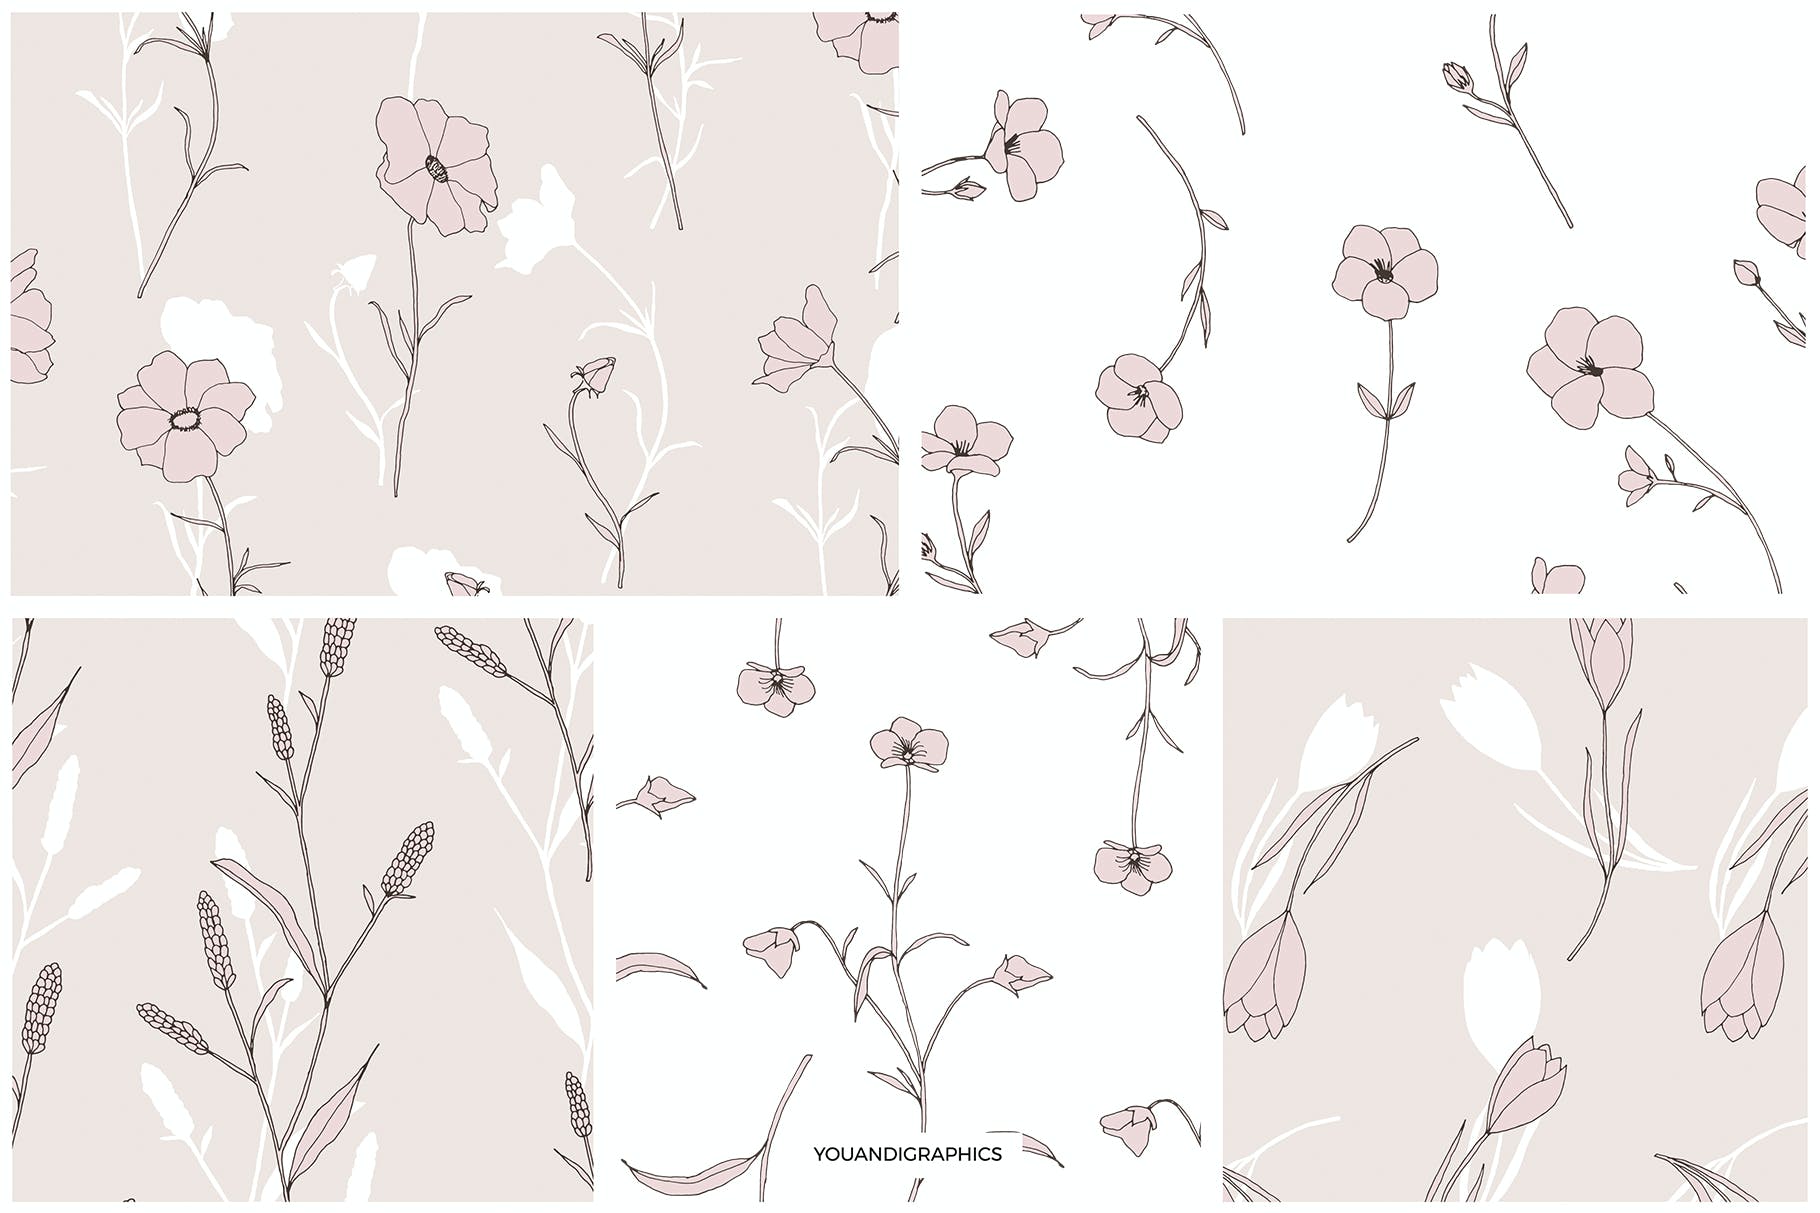 精美的花卉图案和元素 Dainty Floral Patterns & Elements 图片素材 第11张